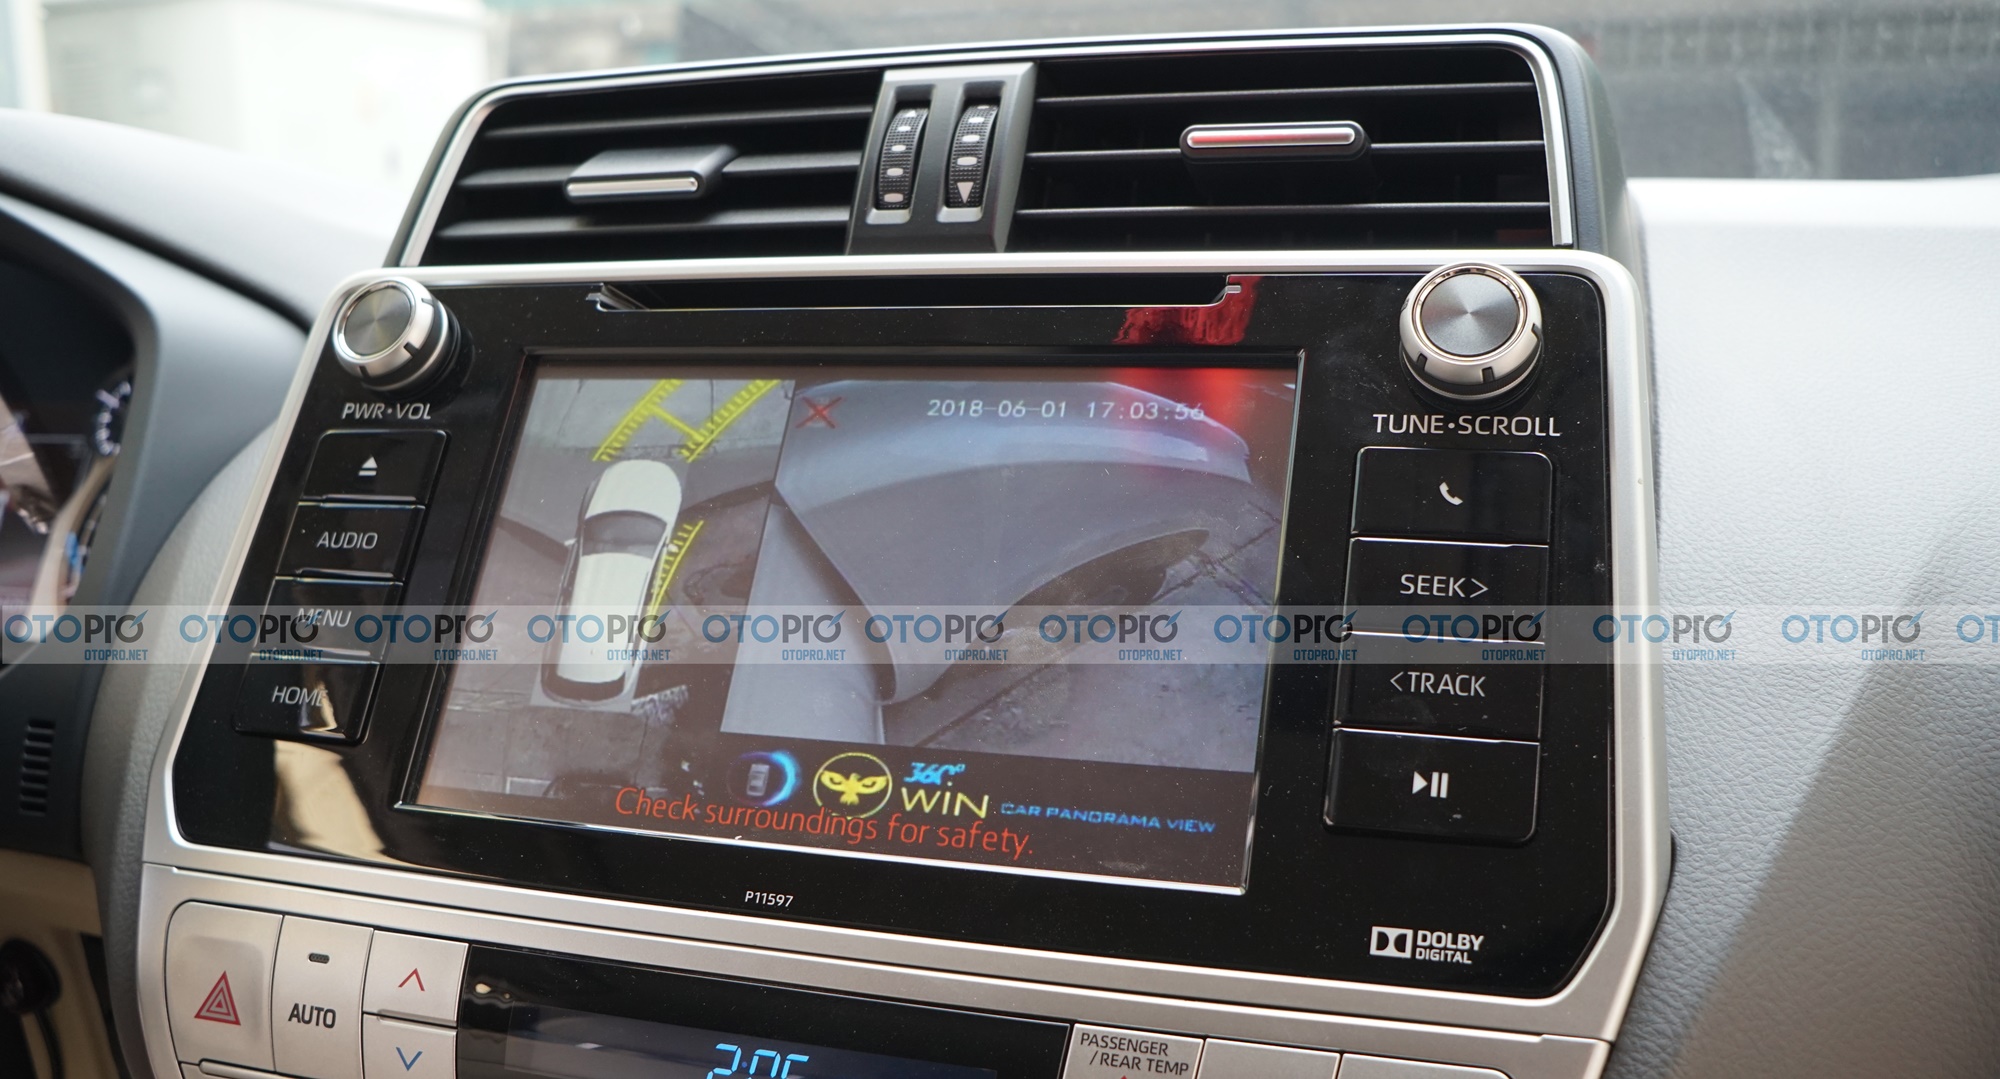 Camera 360 ô tô Owin Sony siêu nét